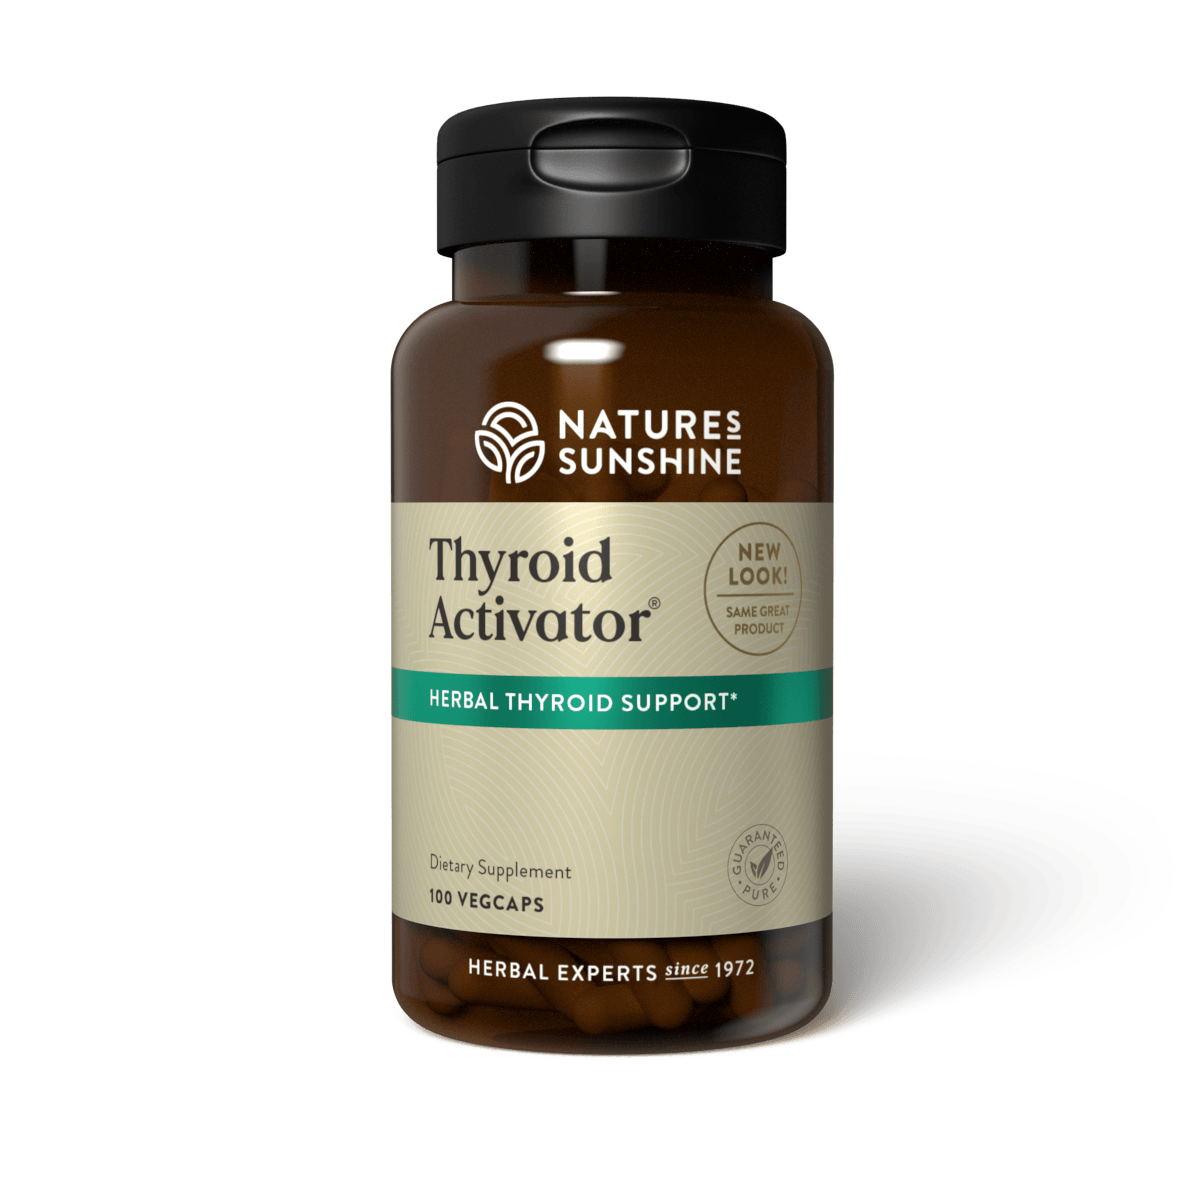 Nature's Sunshine Thyroid Activator